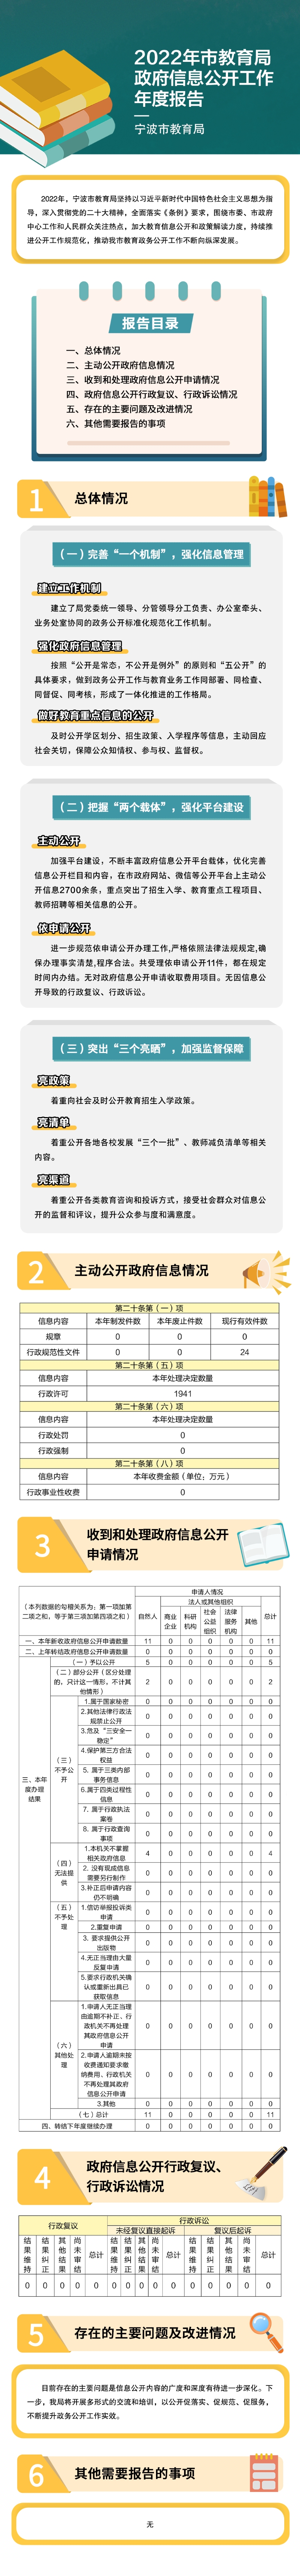 宁波市教育局2022年政府信息公开工作年度报告.jpg